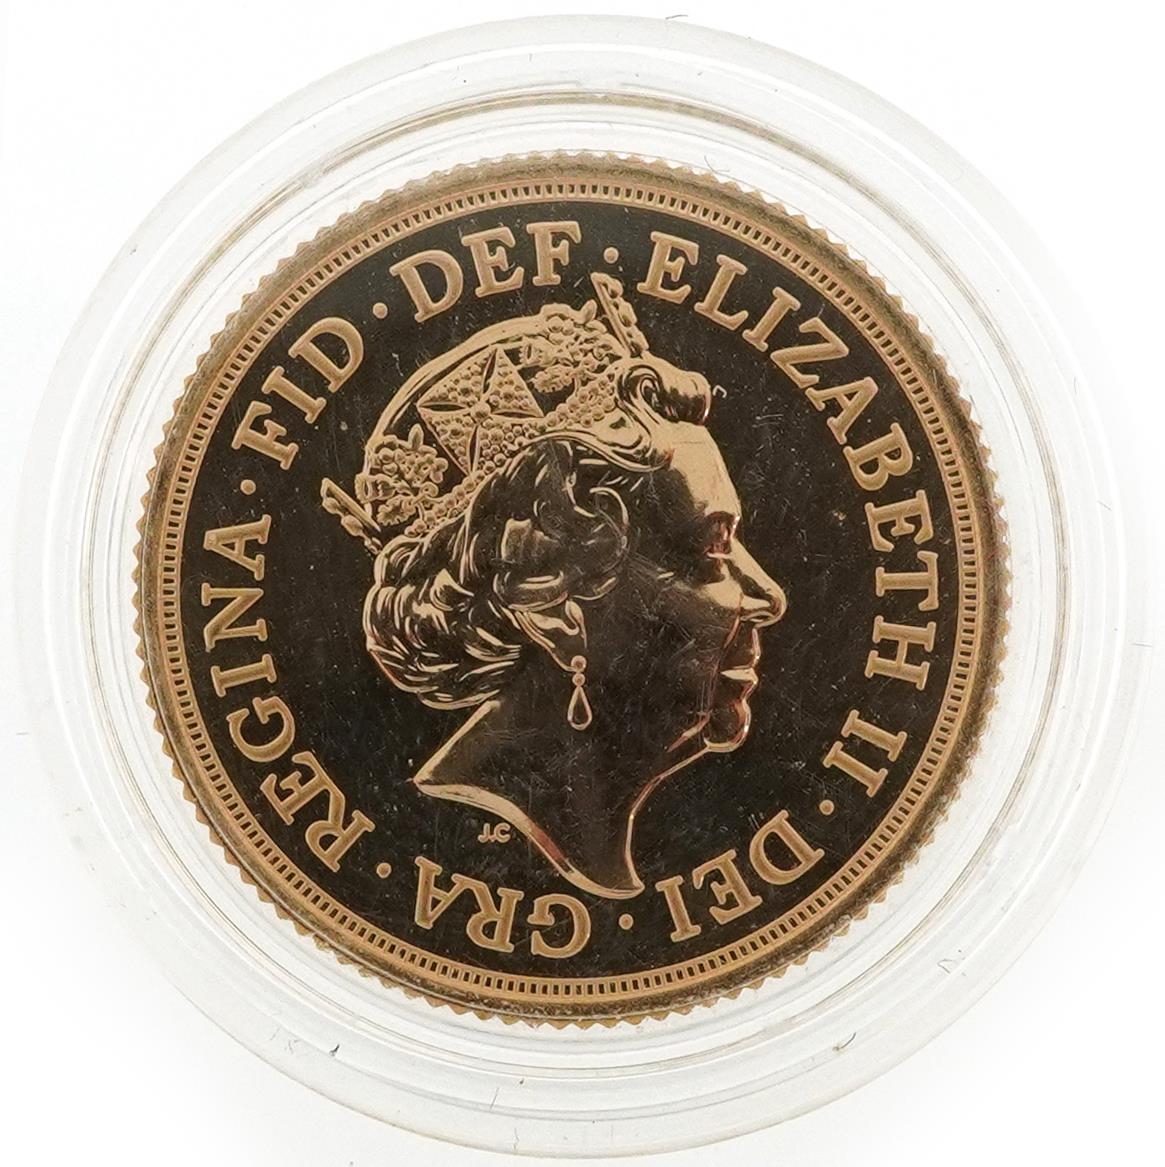 Elizabeth II 2016 gold sovereign - Image 2 of 2